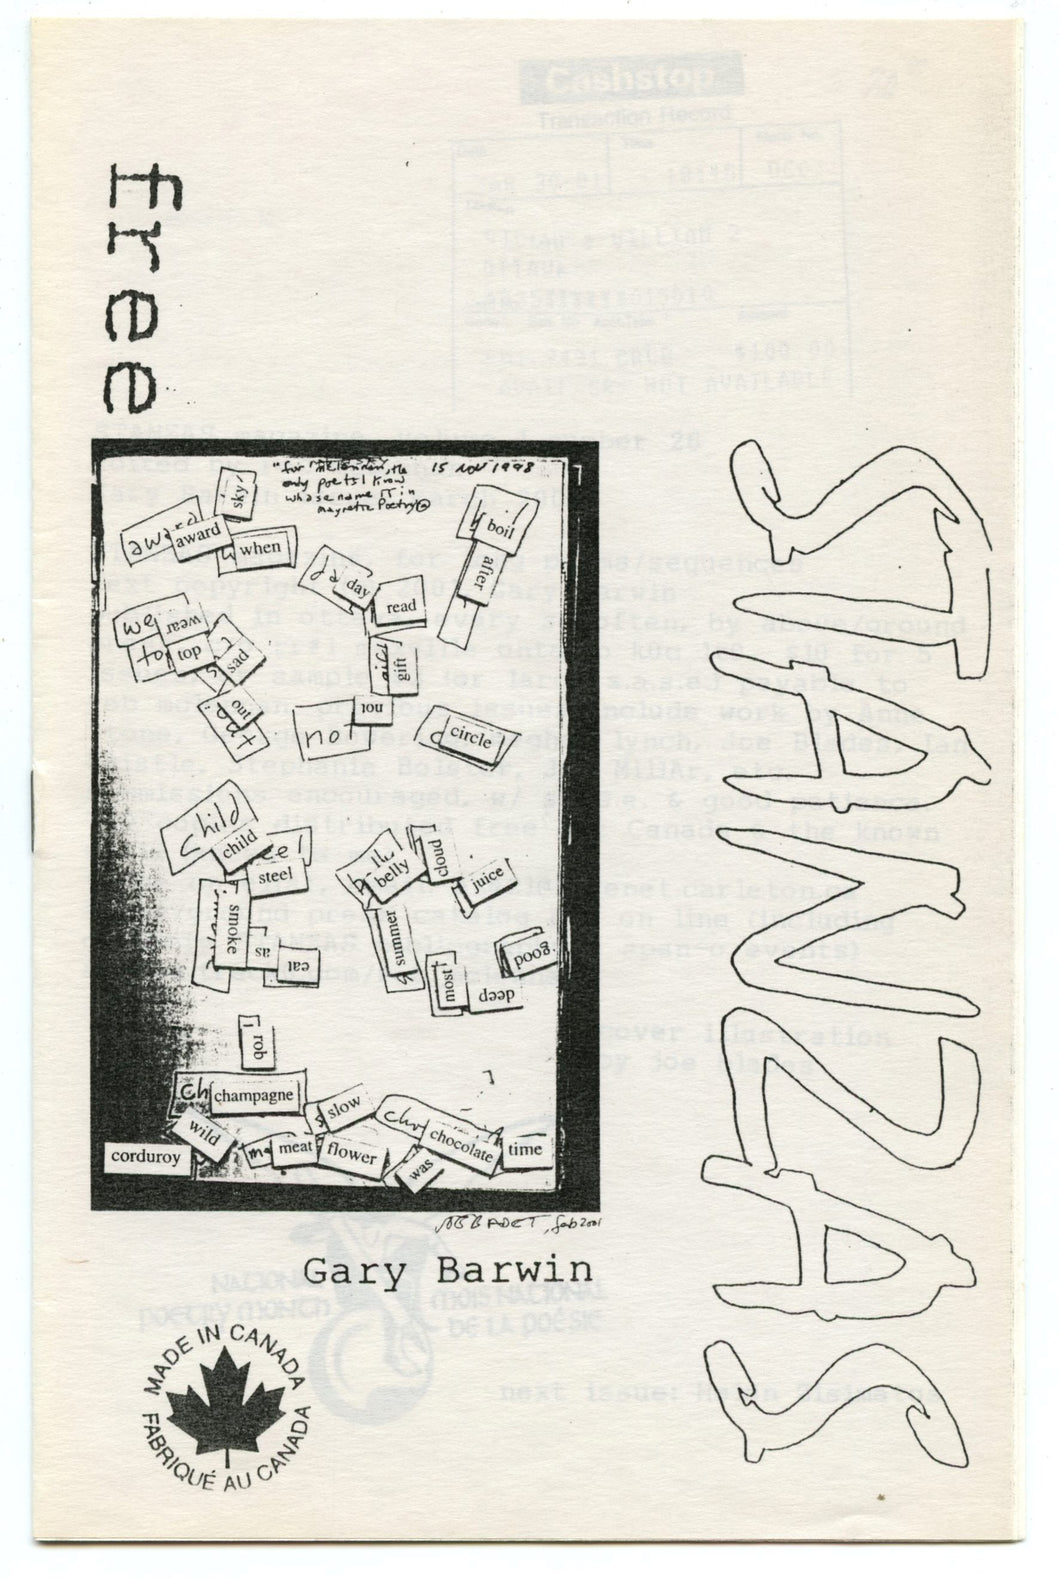 Stanzas Magazine, Gary Barwin issue, March 2001